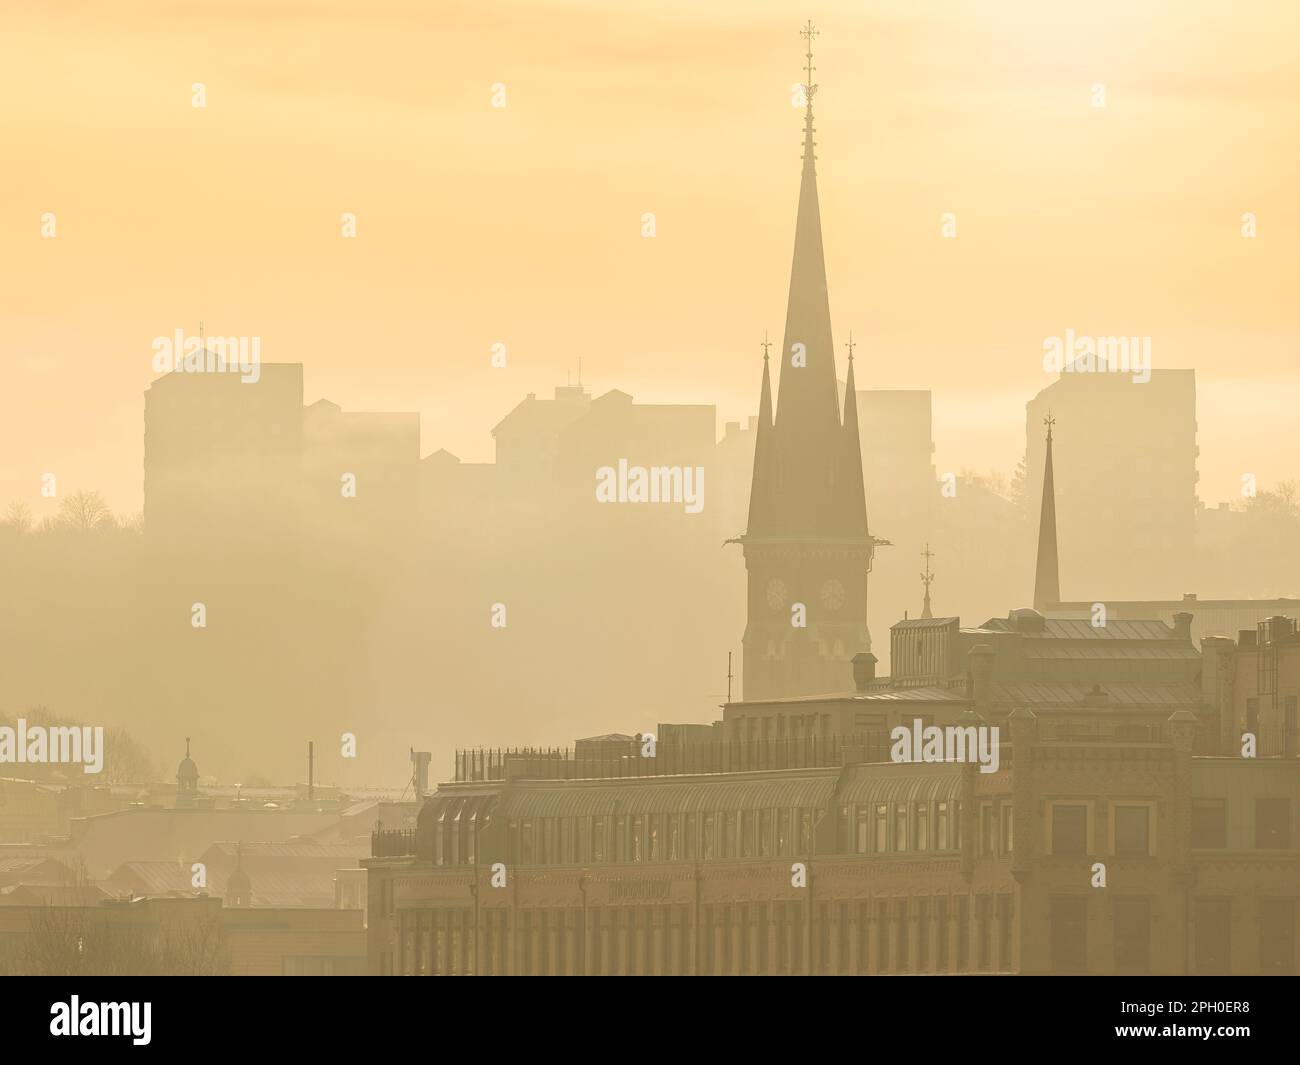 El cielo matutino nebuloso revela el horizonte de Gothenburgs de un paisaje urbano extenso, sus estructuras construidas y las grandes torres de la iglesia que emergen de la neblina. Foto de stock